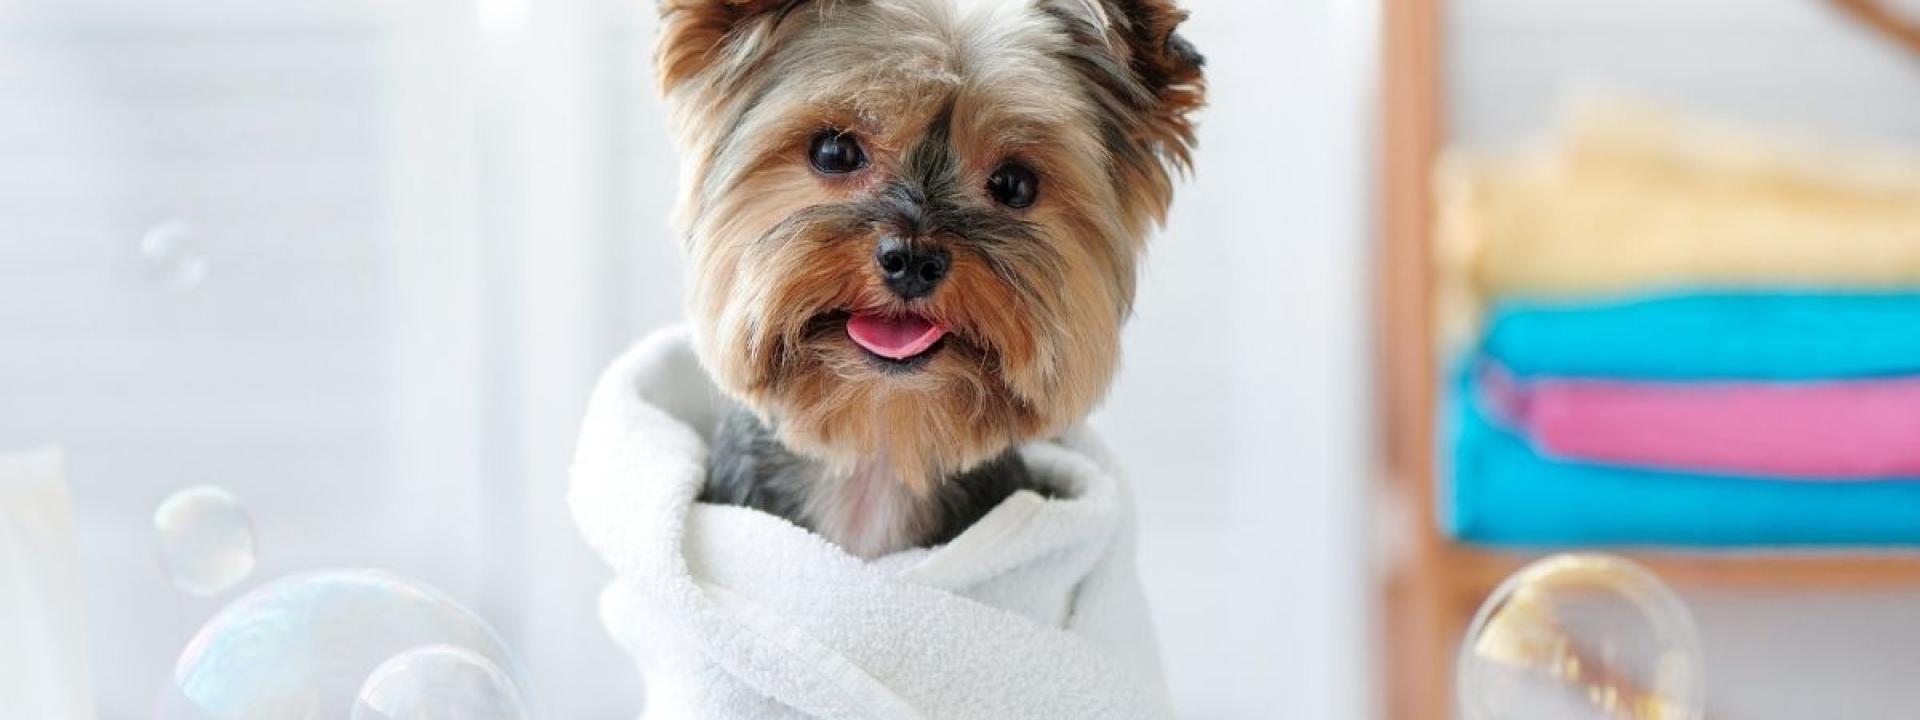 dog-bathing-grooming-tips.jpg